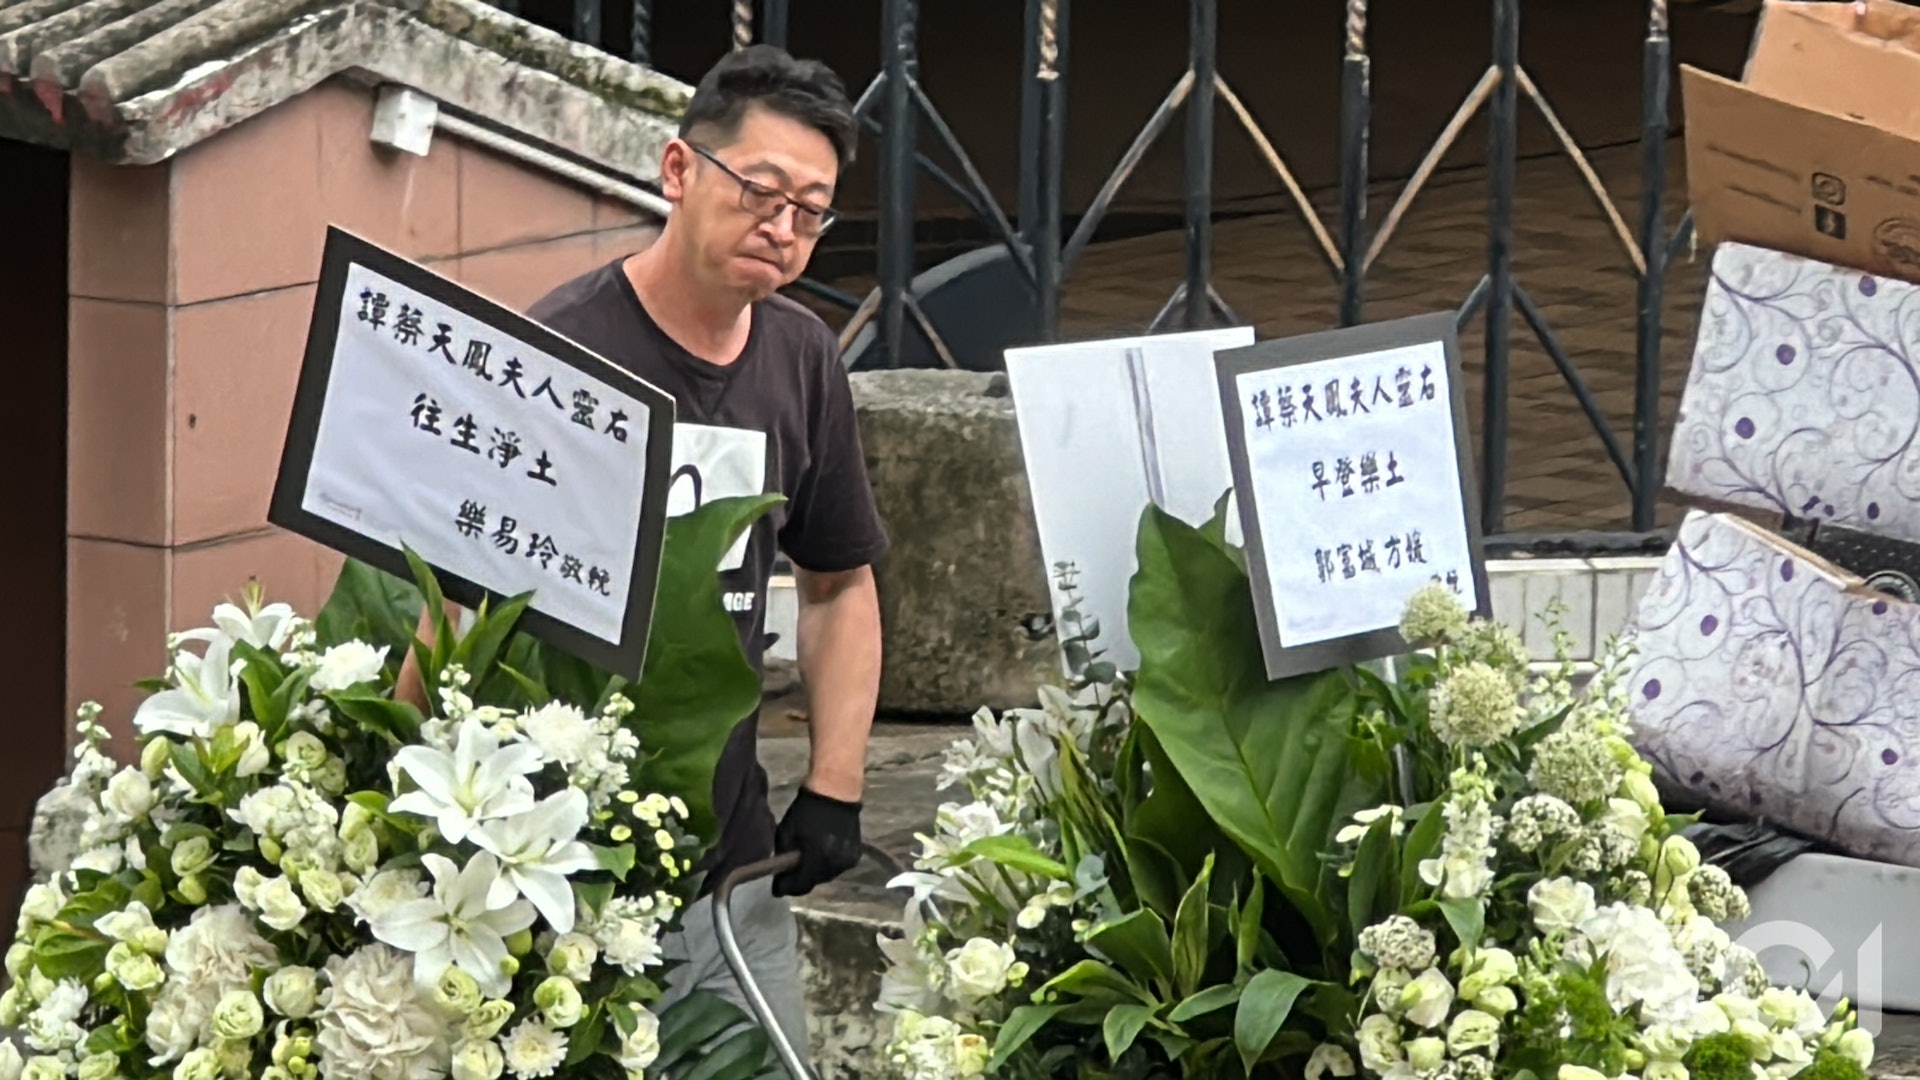 Đám đông xếp hàng dài đến viếng nữ người mẫu Hồng Kông bị giết hại, phân xác - Ảnh 10.